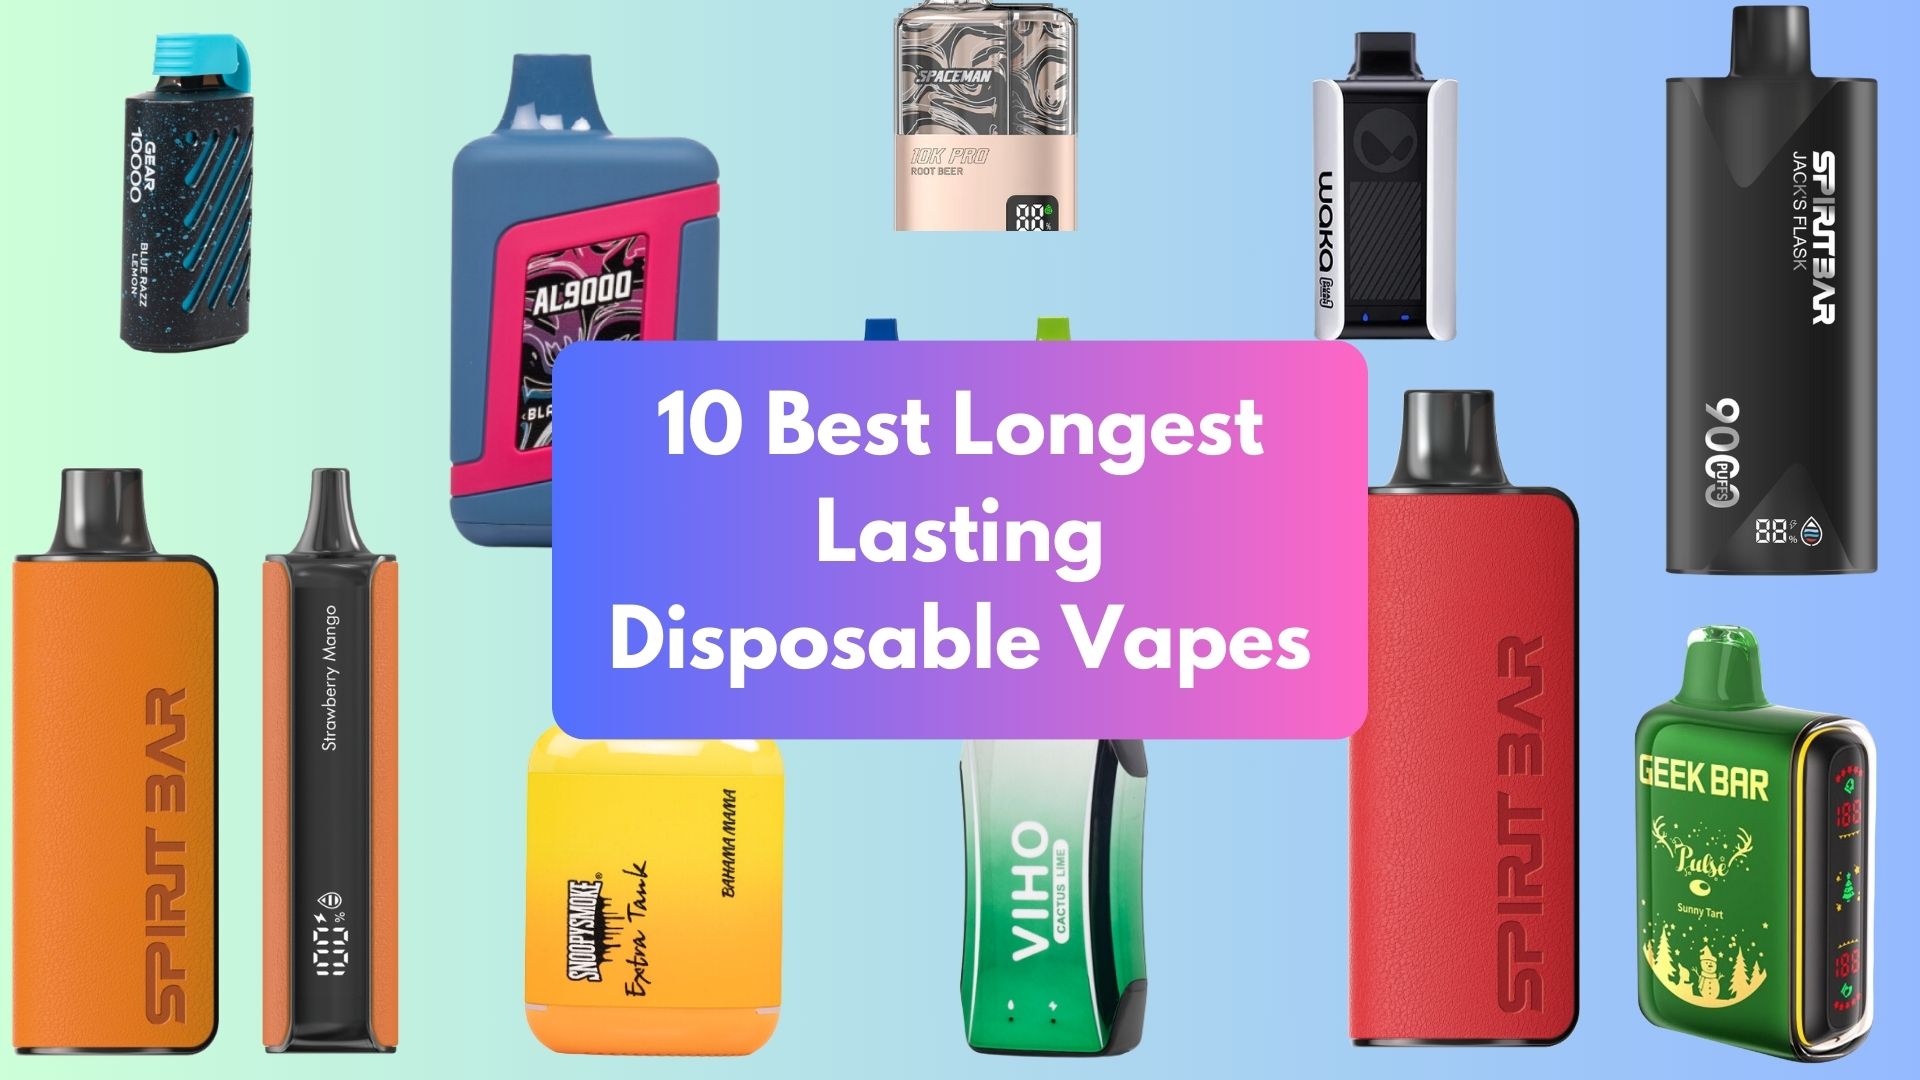 Best Longest Lasting Disposable Vapes